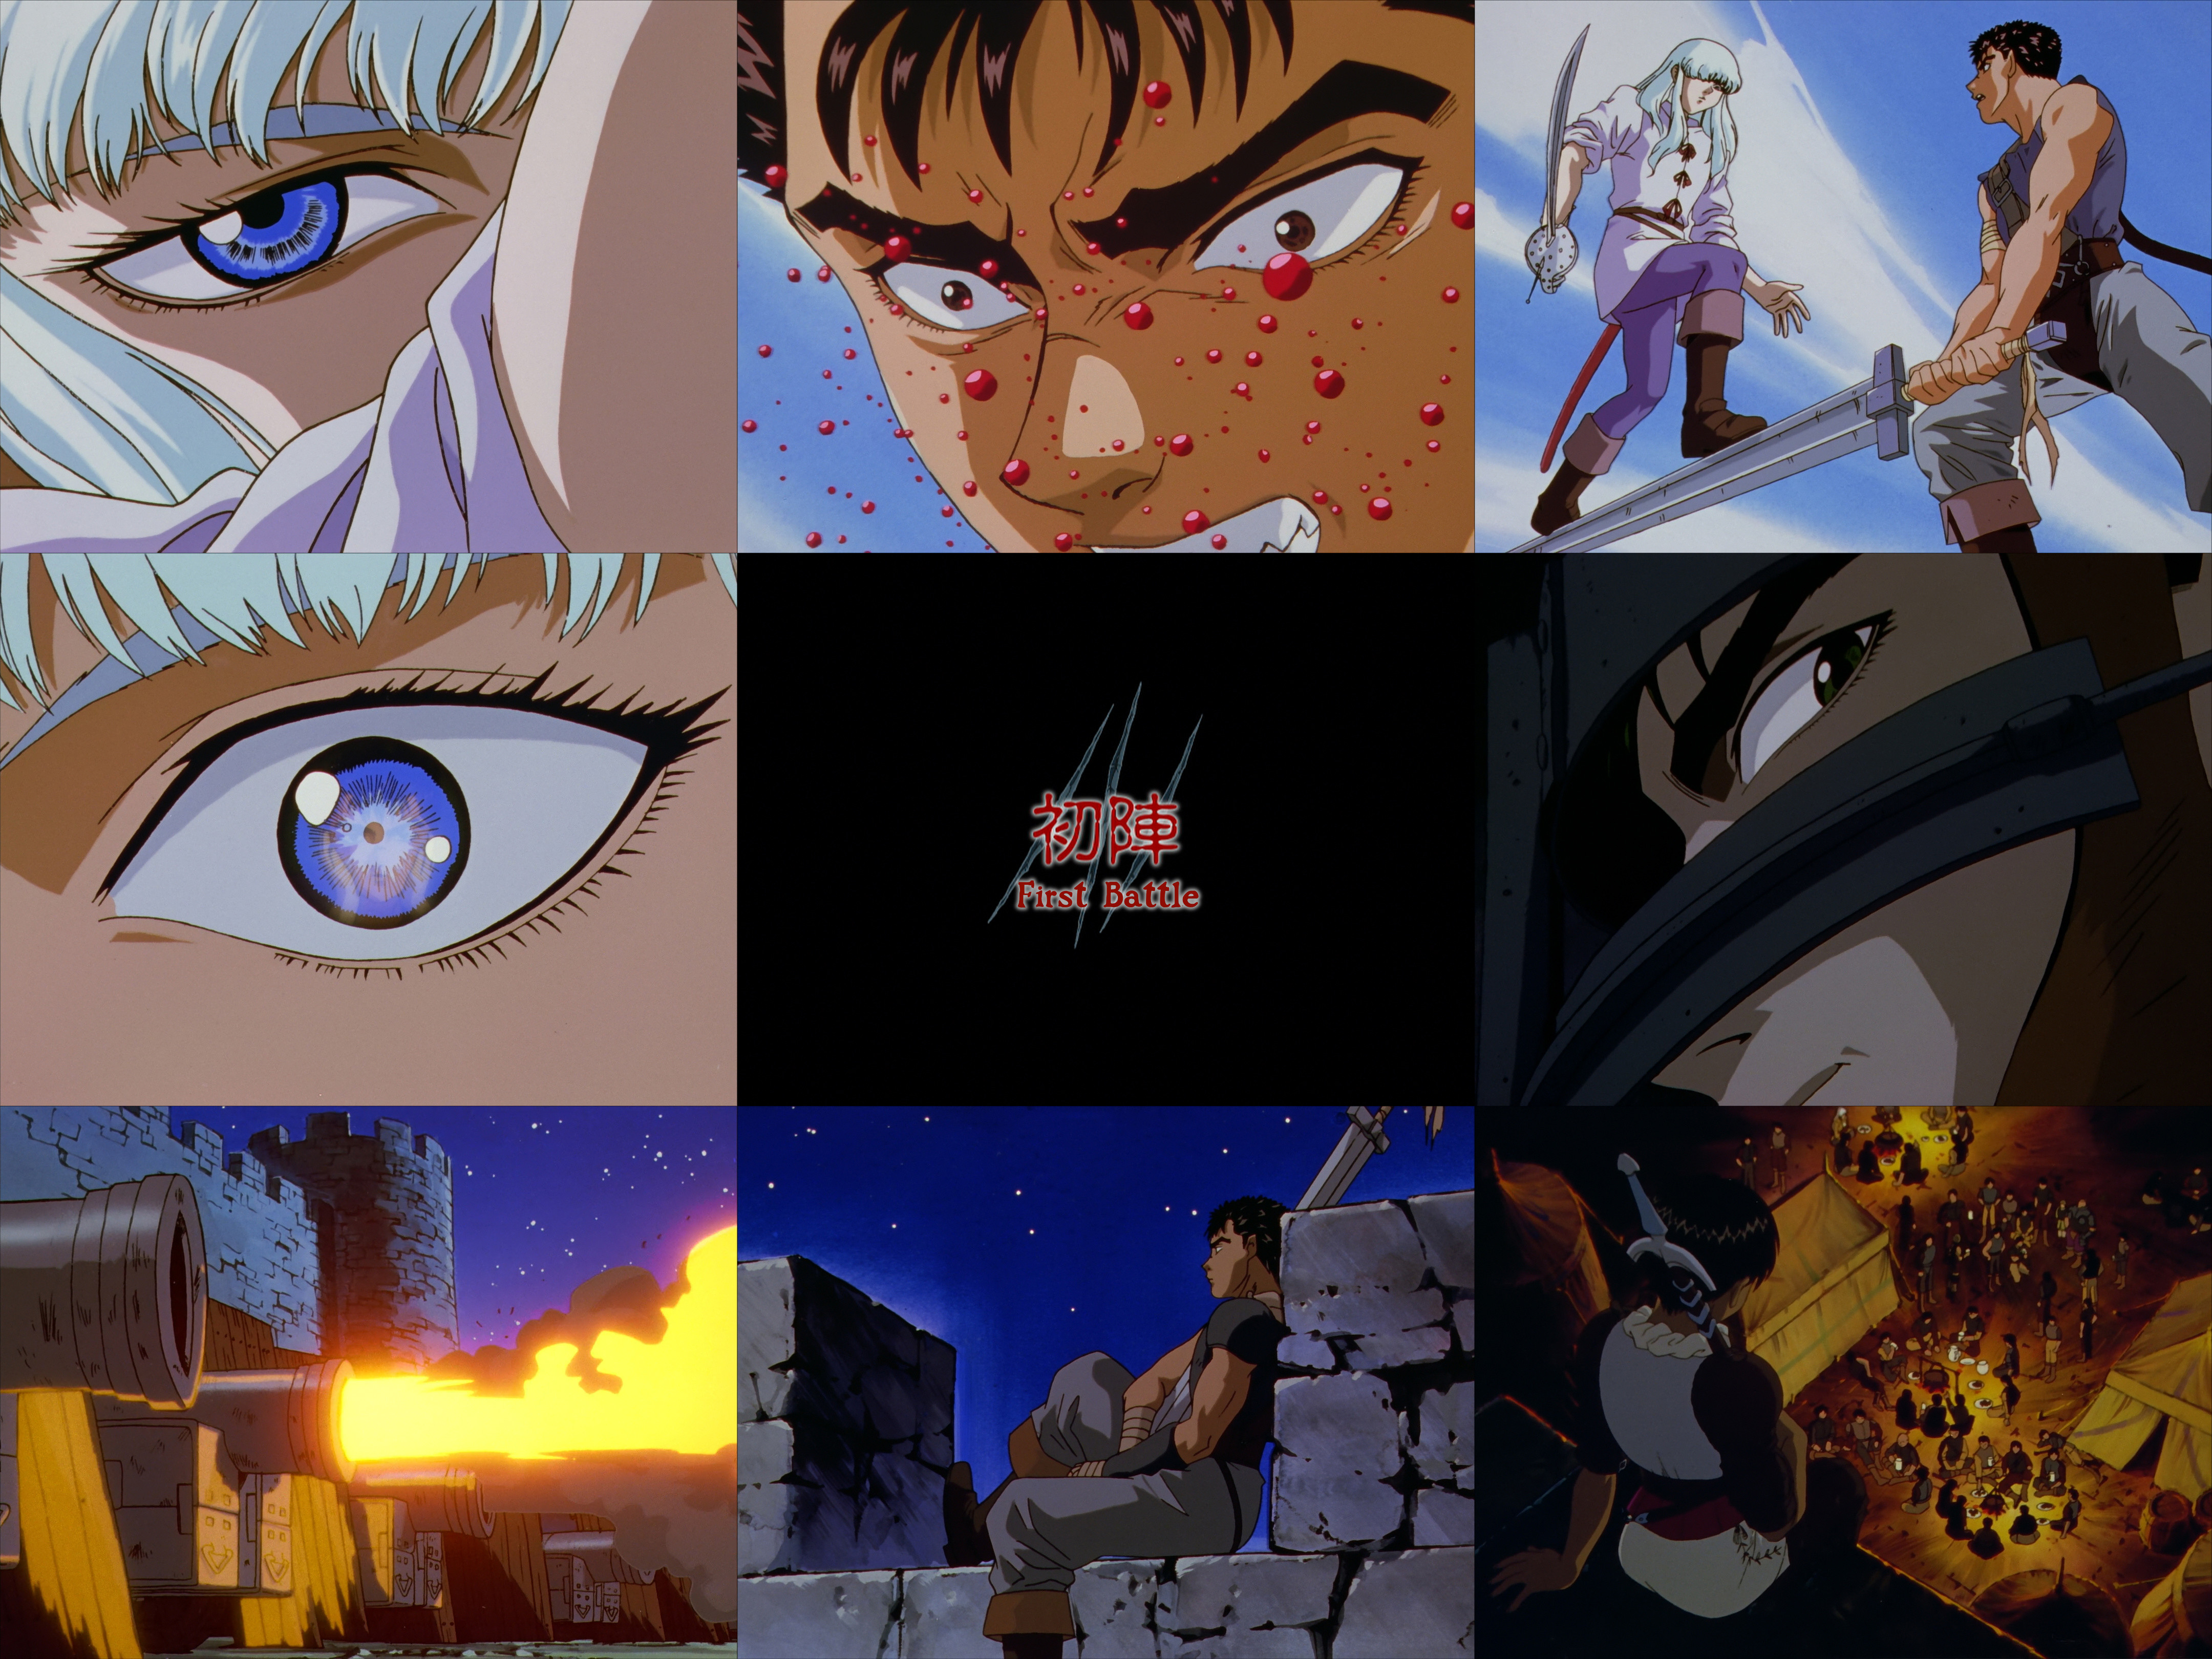 Berserk (1997) Rewatch - Episode 2 : r/anime